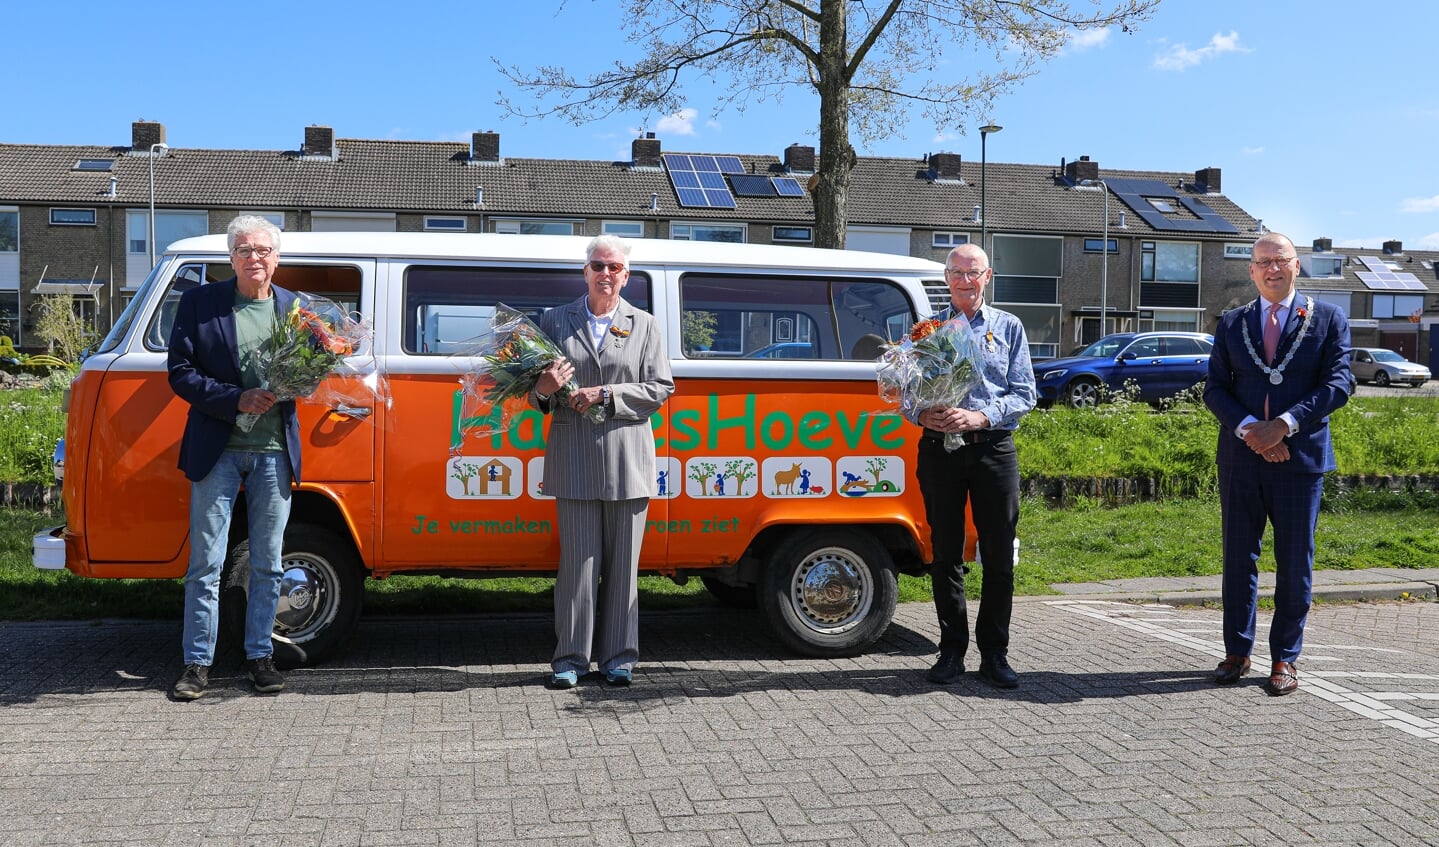 • Koninklijke onderscheiding voor de SV Vridos-bestuursleden Ben Klieverik, Koos Beentjes en Kees Timmerman.